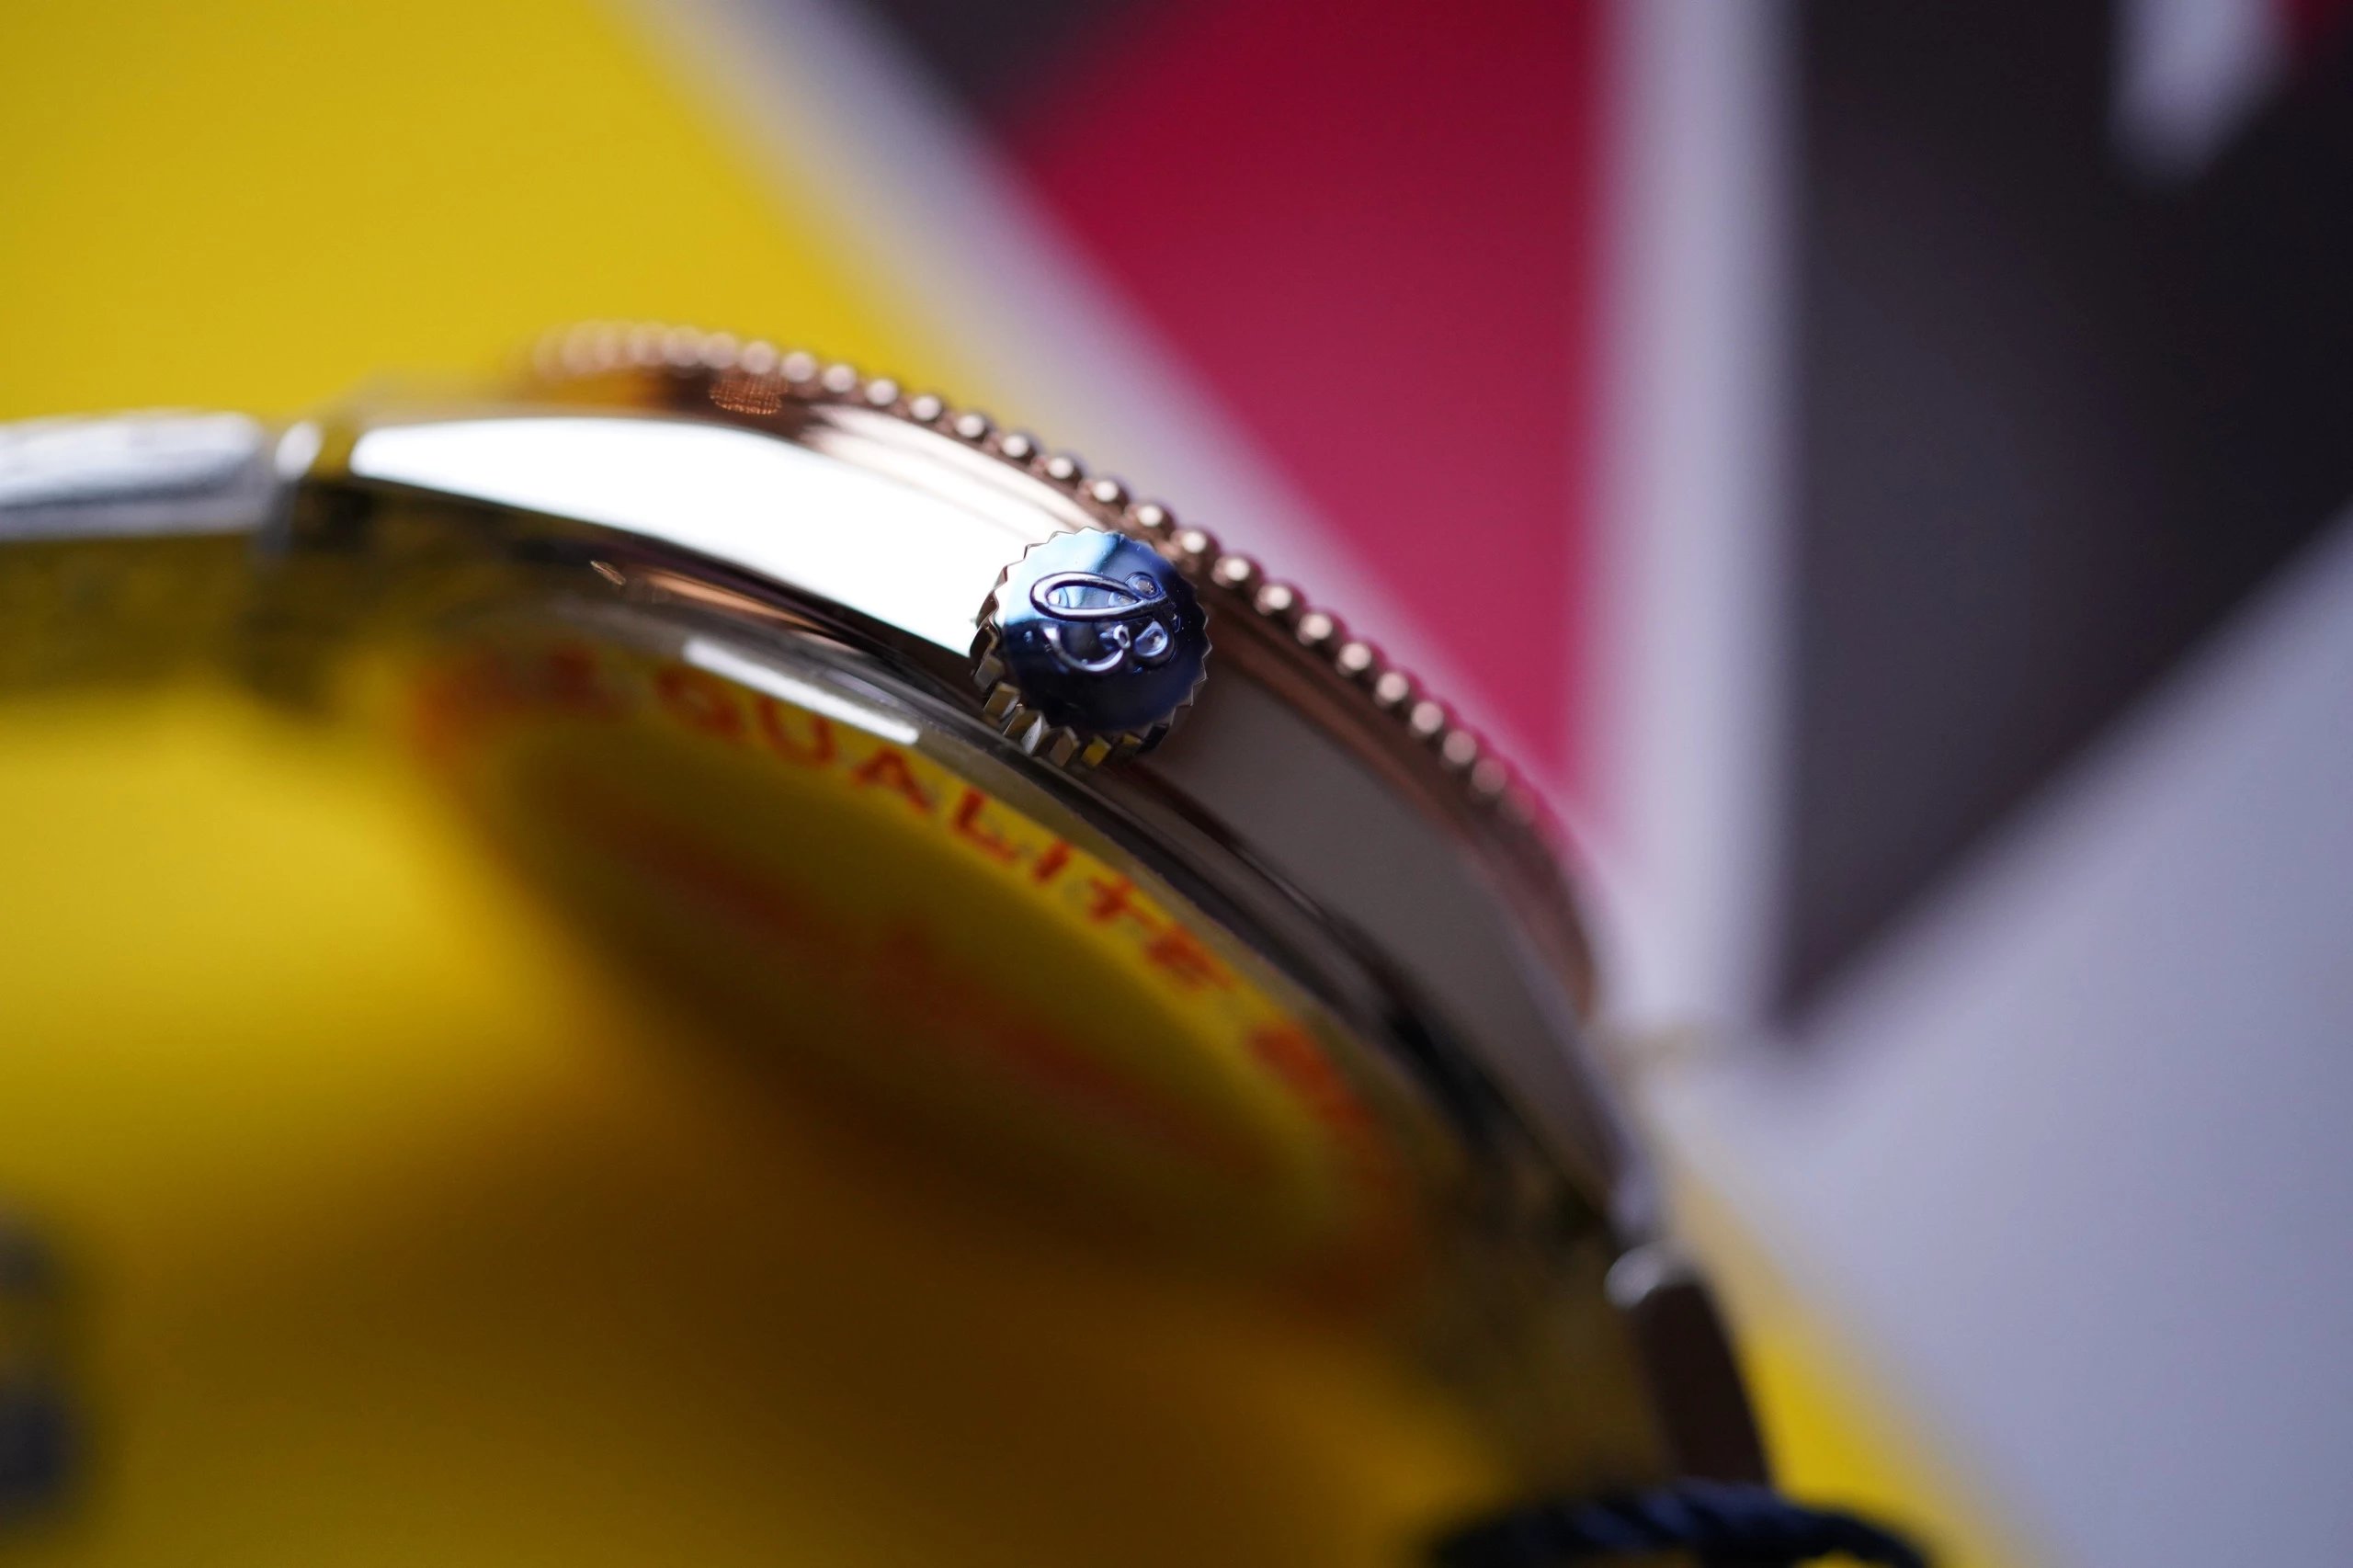 12粒真钻配以精致的彩色珍珠贝母表盘！！OriginalBreitling百年航空计时自动腕表，女款精致典雅，将经典的历史魅力与精密的现代腕表设计精心结合。腕表采用35毫米表壳